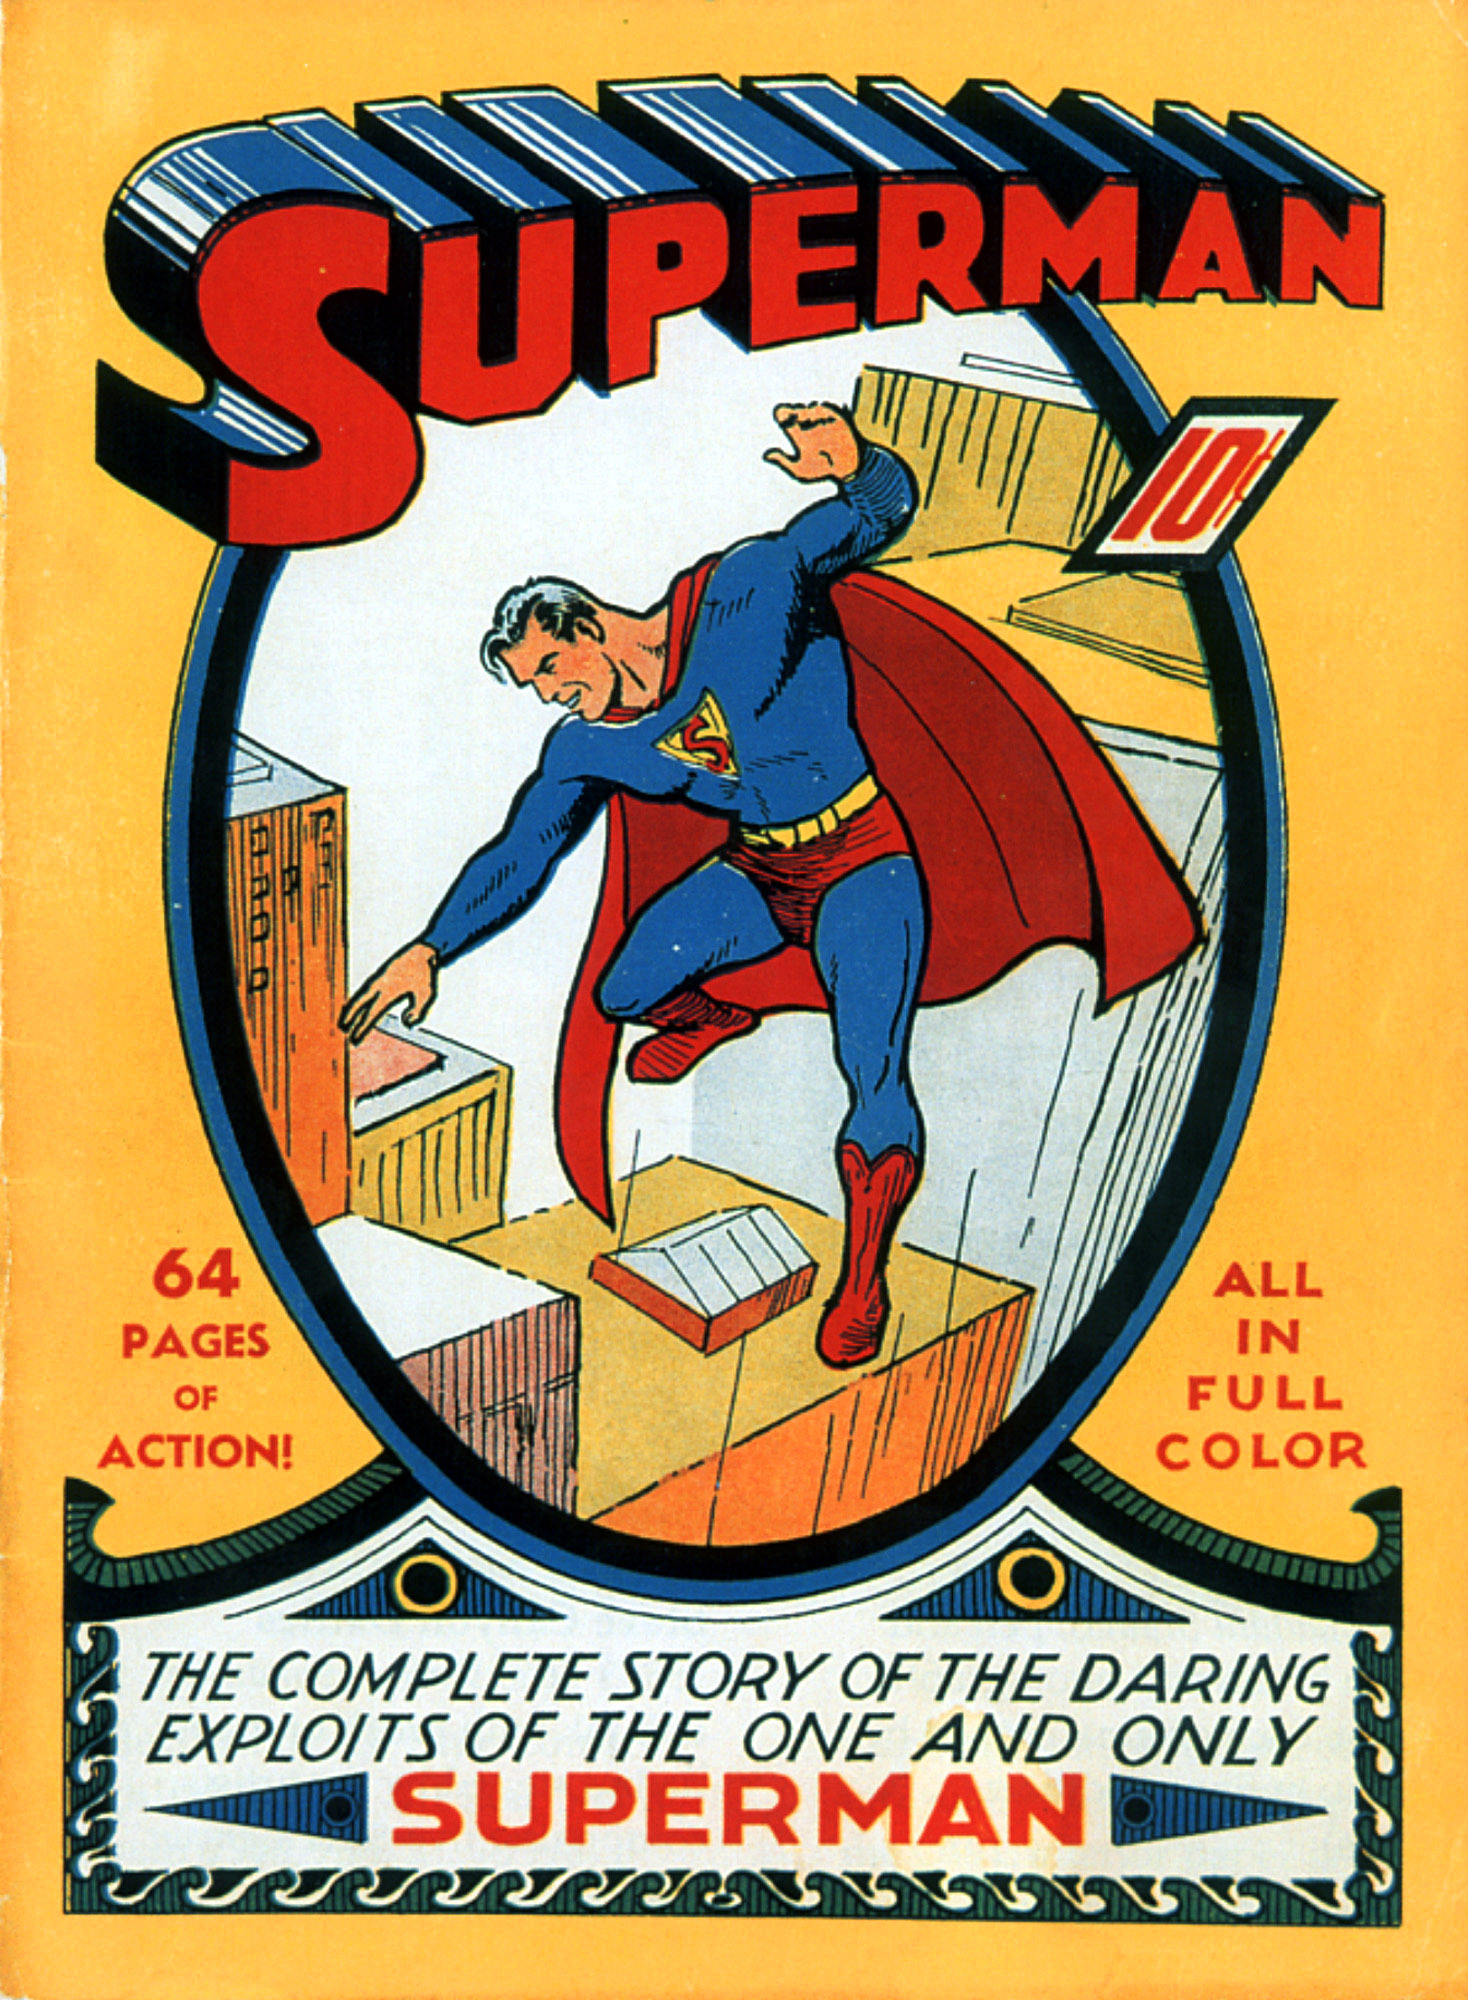 Den första Stålmannen-serien gavs ut i USA år 1939.
När detta ex såldes på en auktion i slutet på 90-talet föll slutbudet på hela 51 750 dollar.